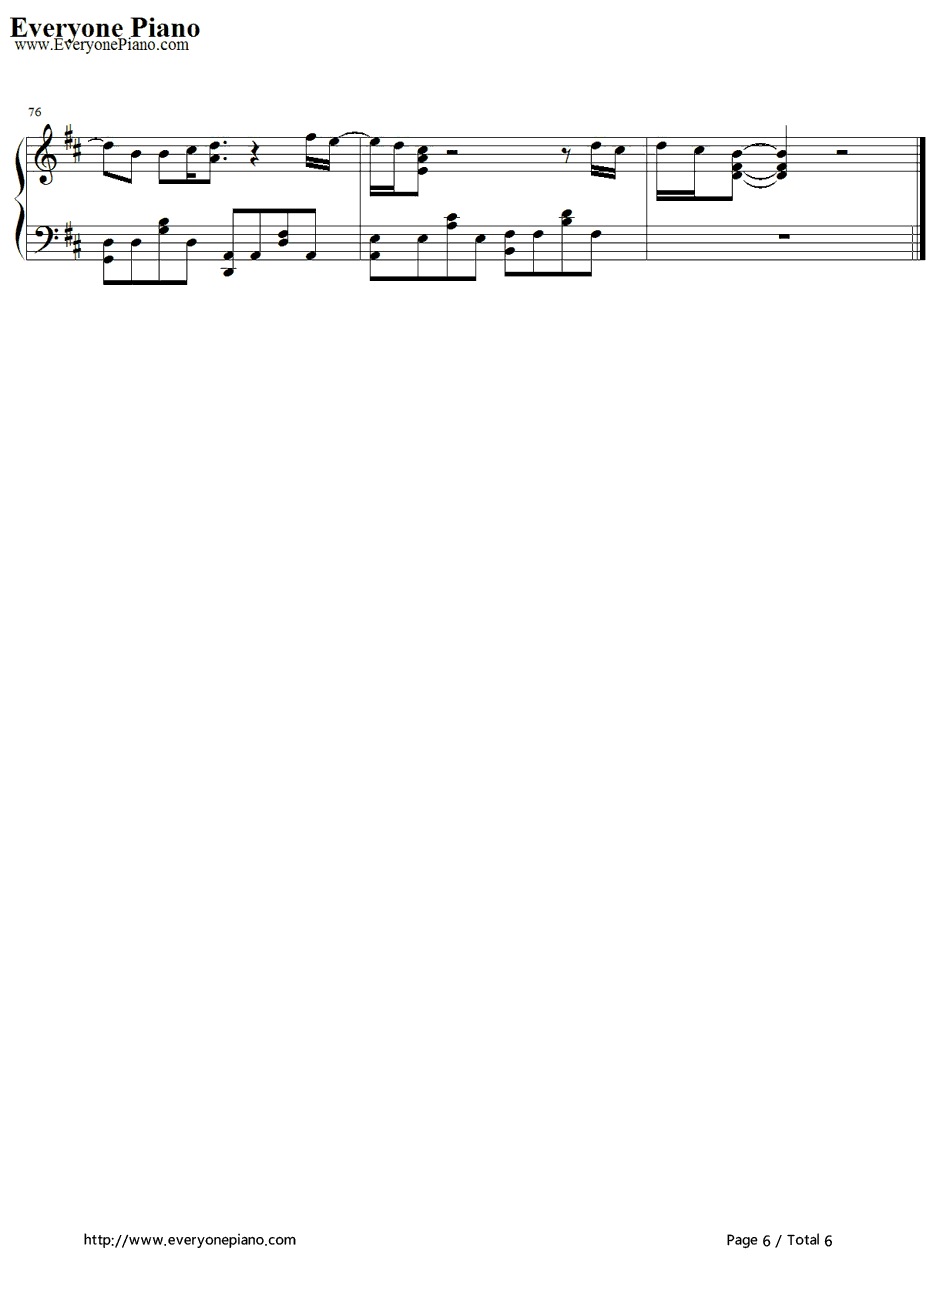 Alej an dro钢琴谱-LadyGaGa6